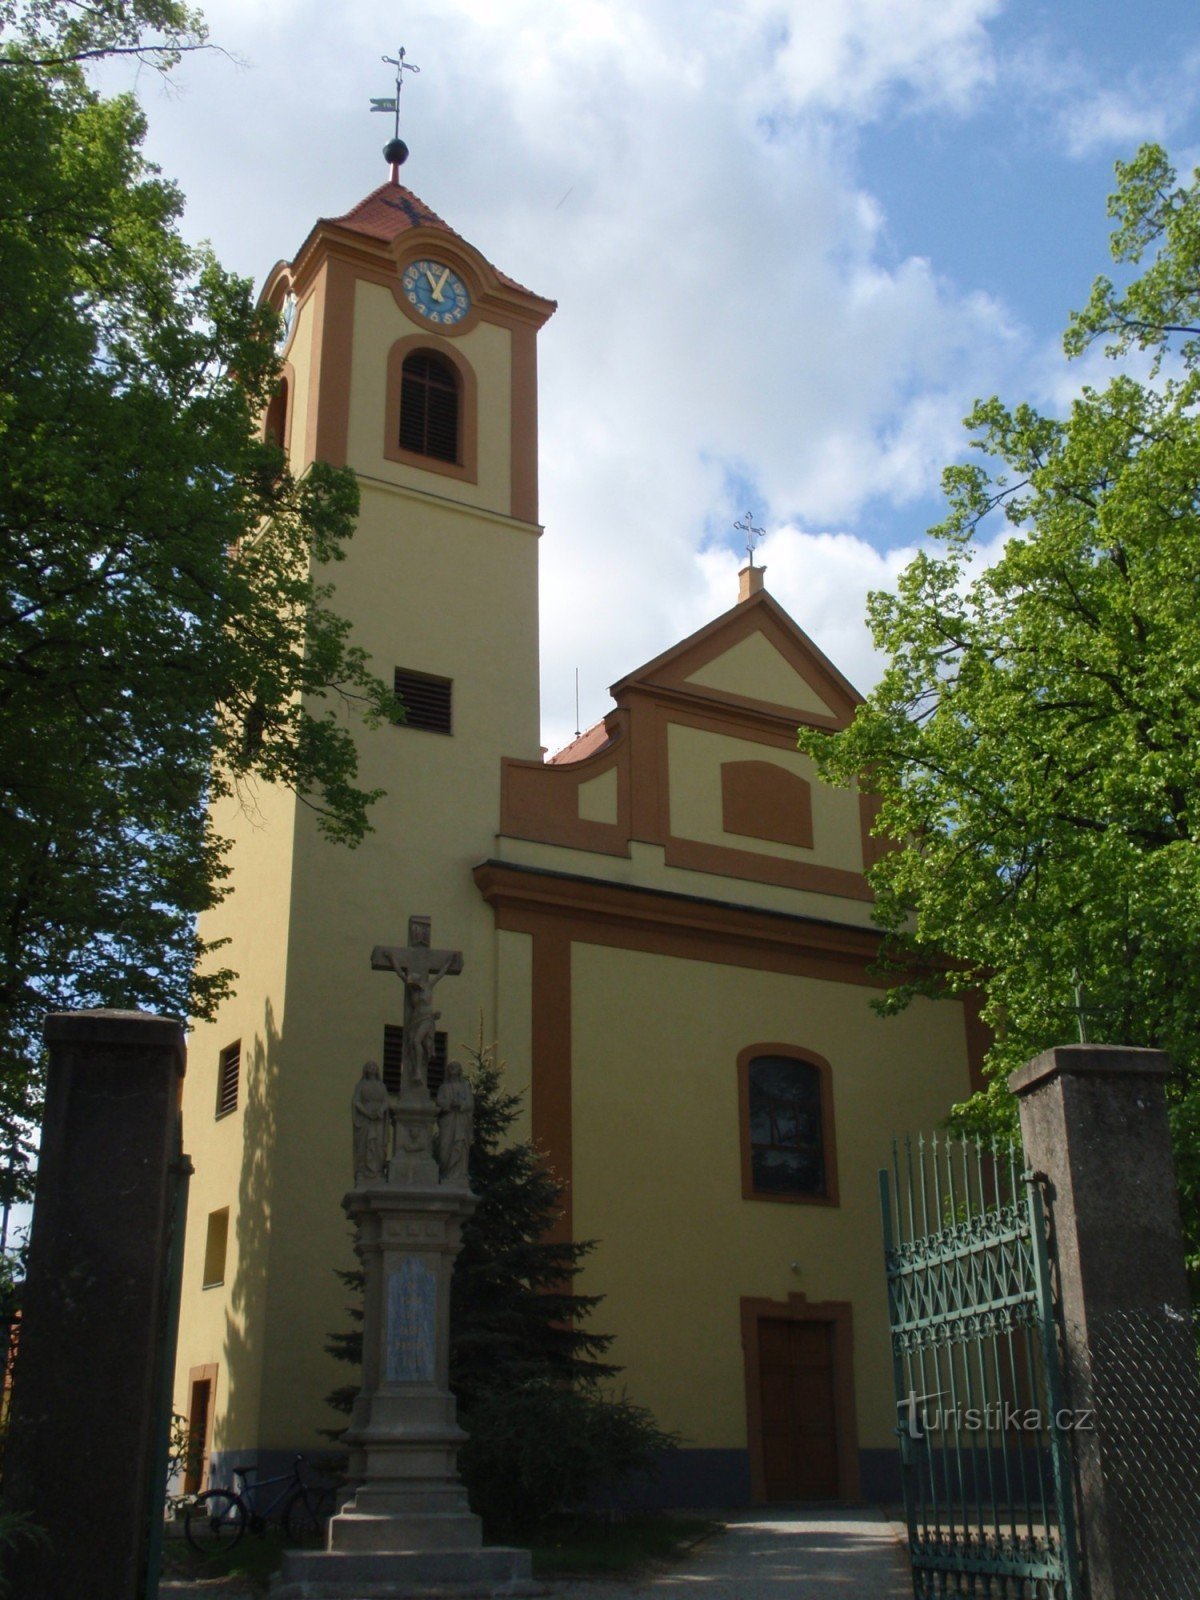 Moravská Nová Ves - church and statues